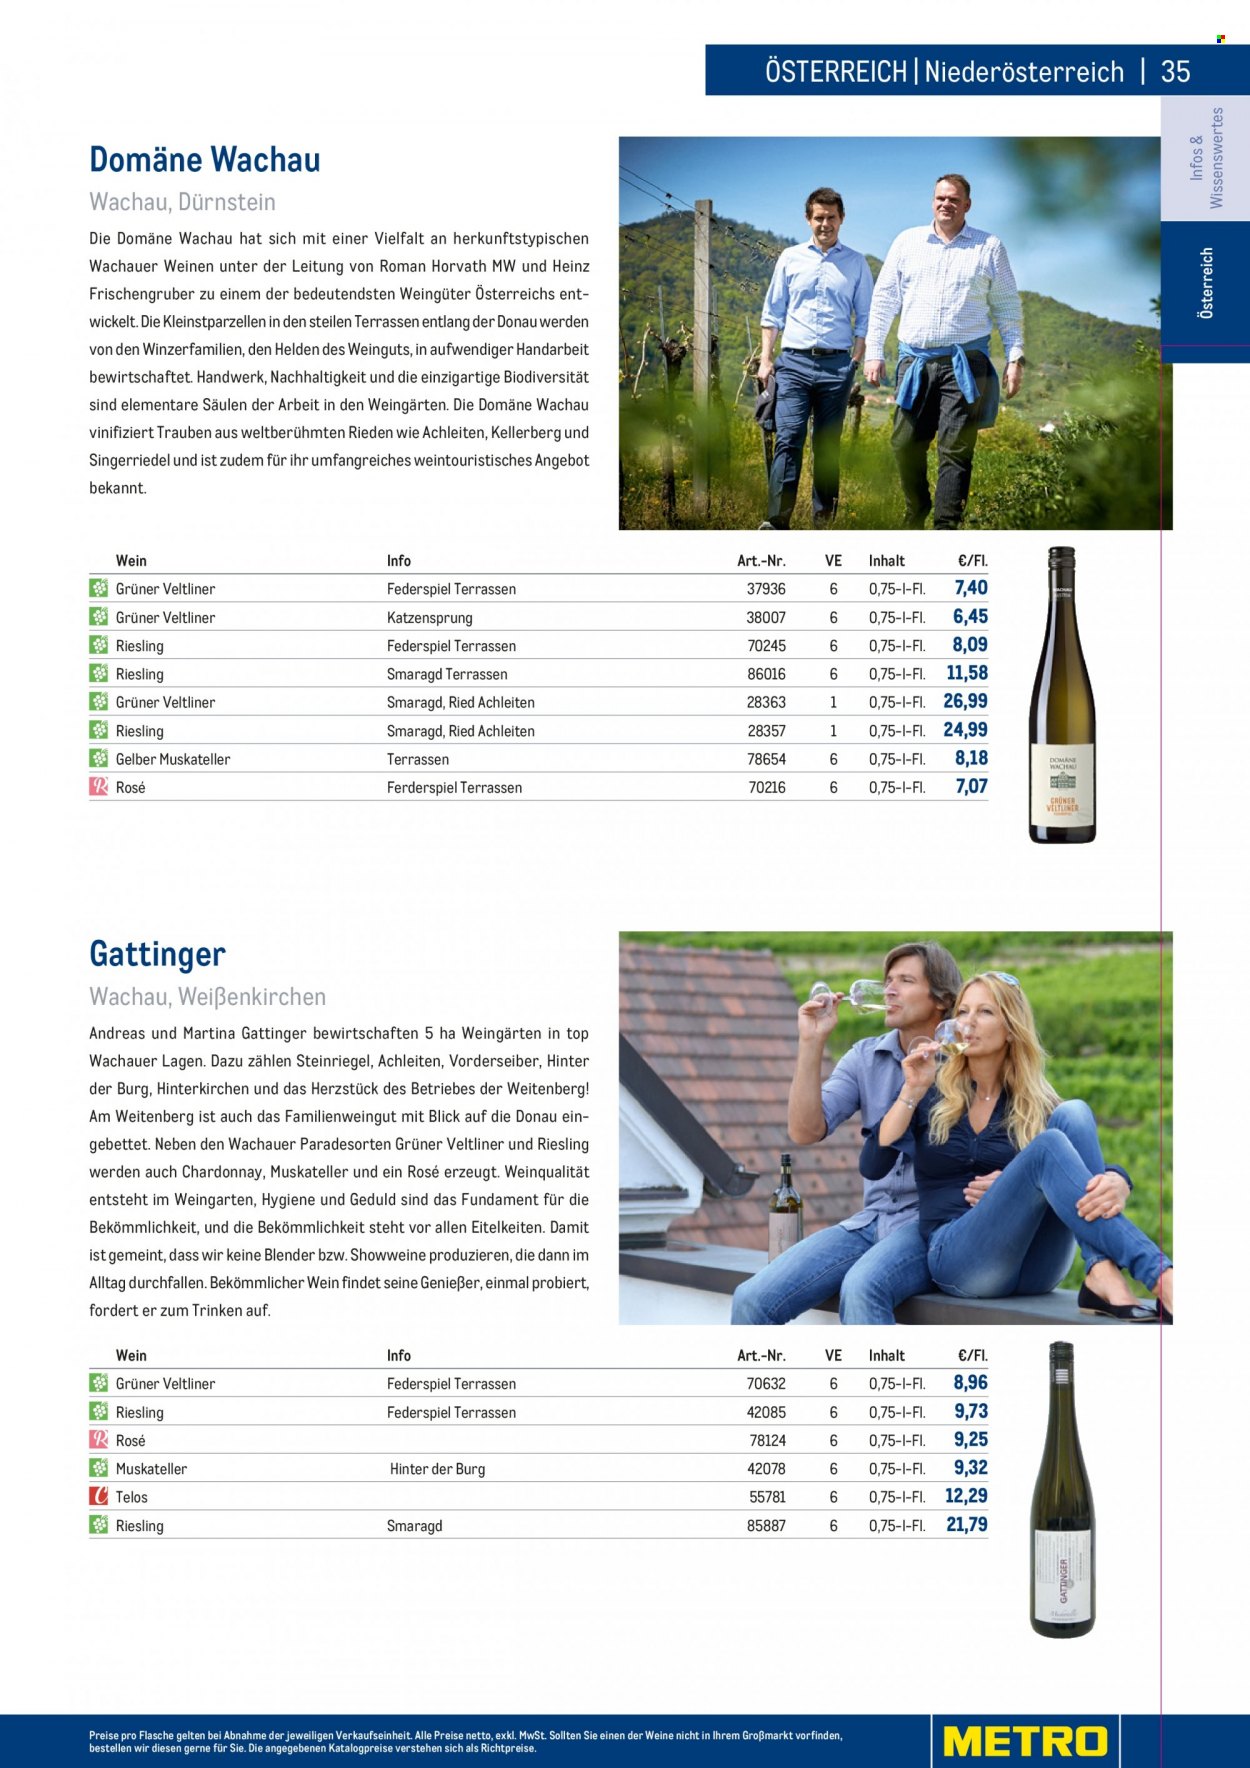 Angebote Metro - 7.9.2022 - 30.4.2023 - Verkaufsprodukte - Trauben, Heinz, Wein, Riesling, Chardonnay, Weißwein, Grüner Veltliner, Alkohol, Gelber Muskateller, Blender. Seite 35.